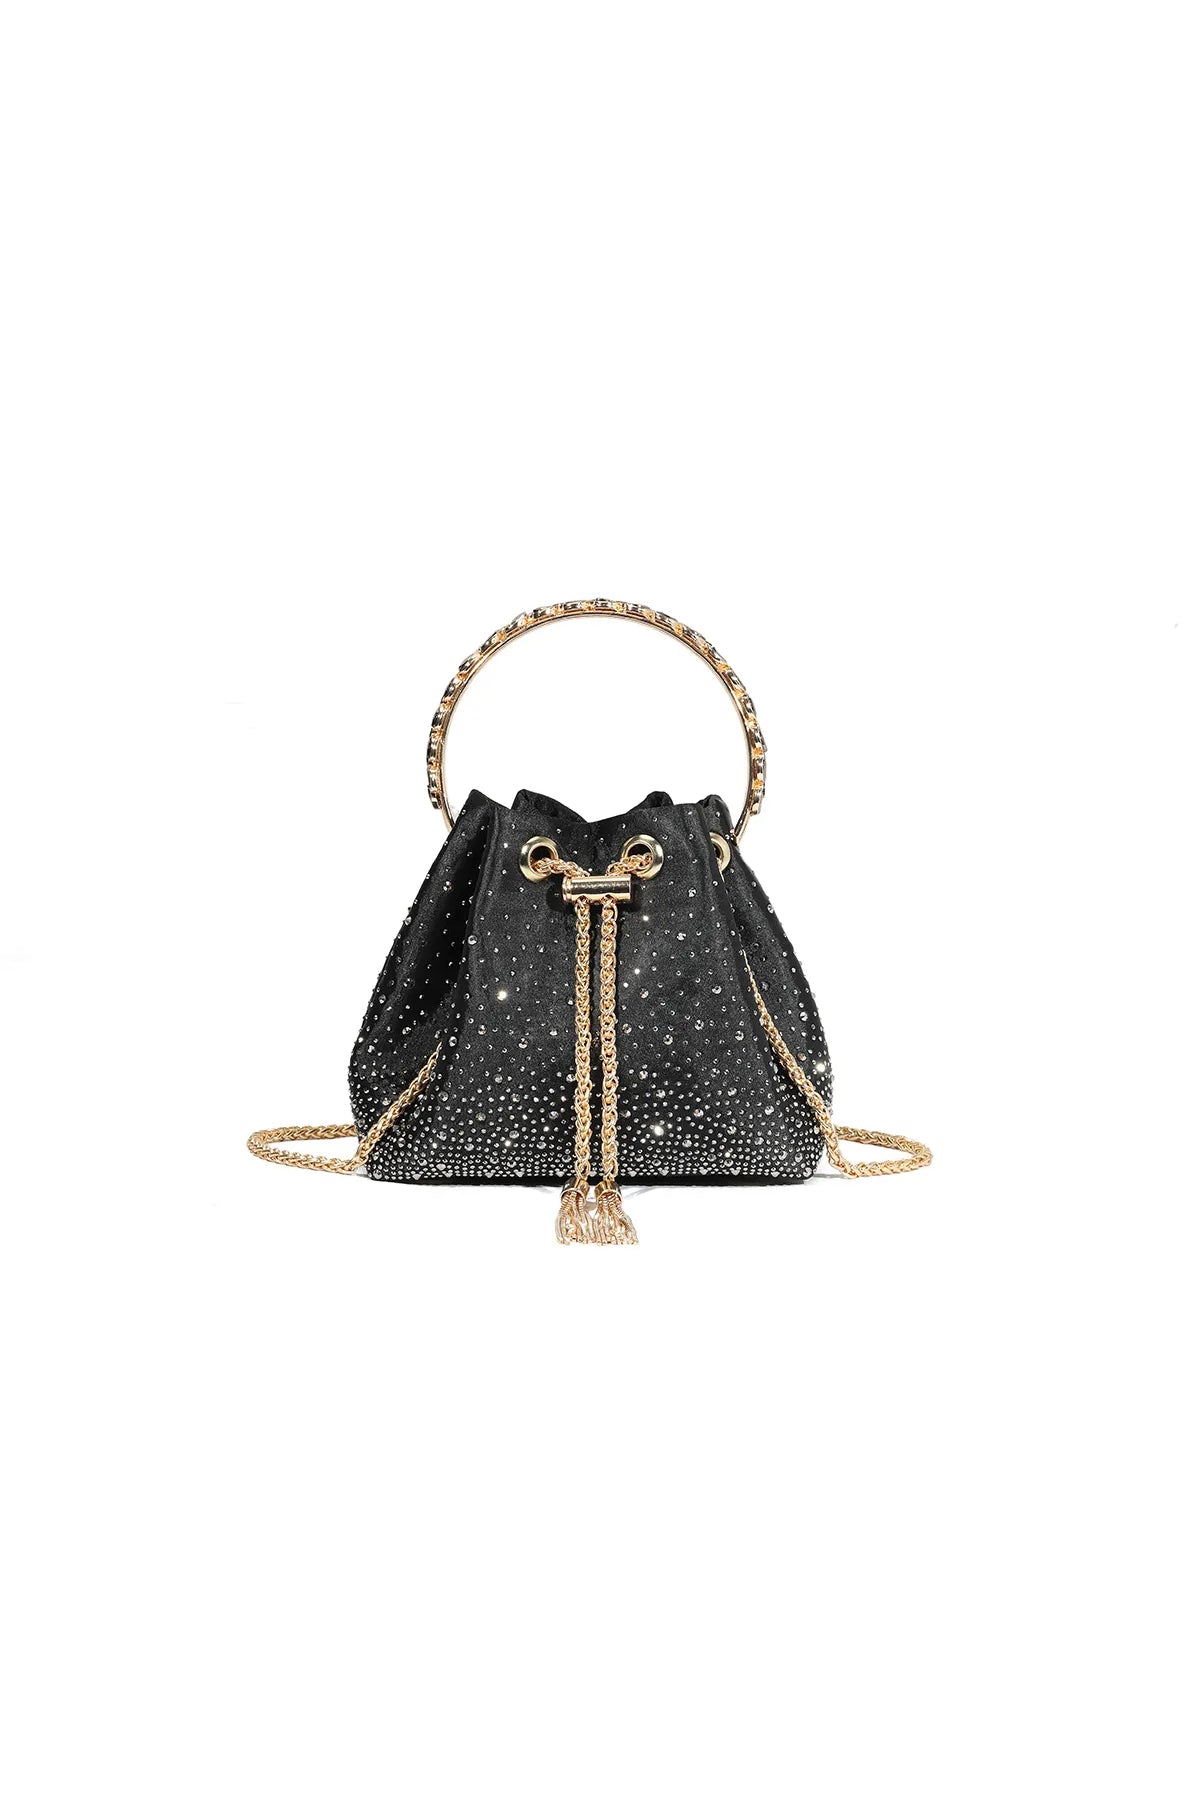 Black Embellished Top Handle Evening Bag